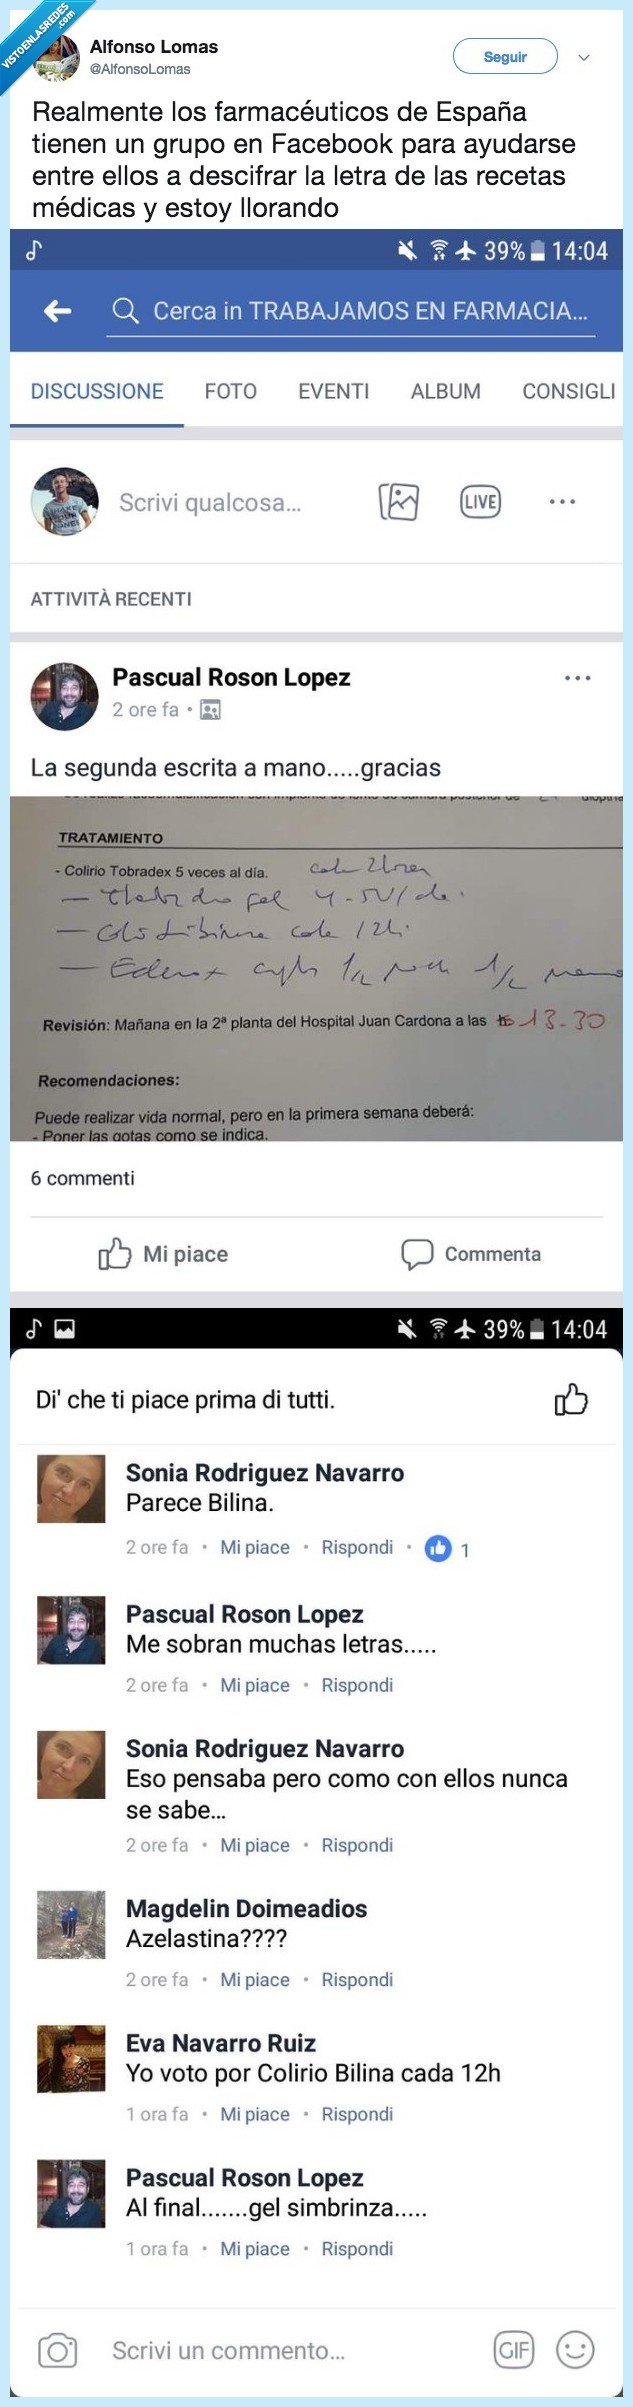 488985 - Los farmacéuticos españoles tienen un grupo de Facebook donde van a pedir ayuda cuando no entienden la letra de las recetas, por @AlfonsoLomas